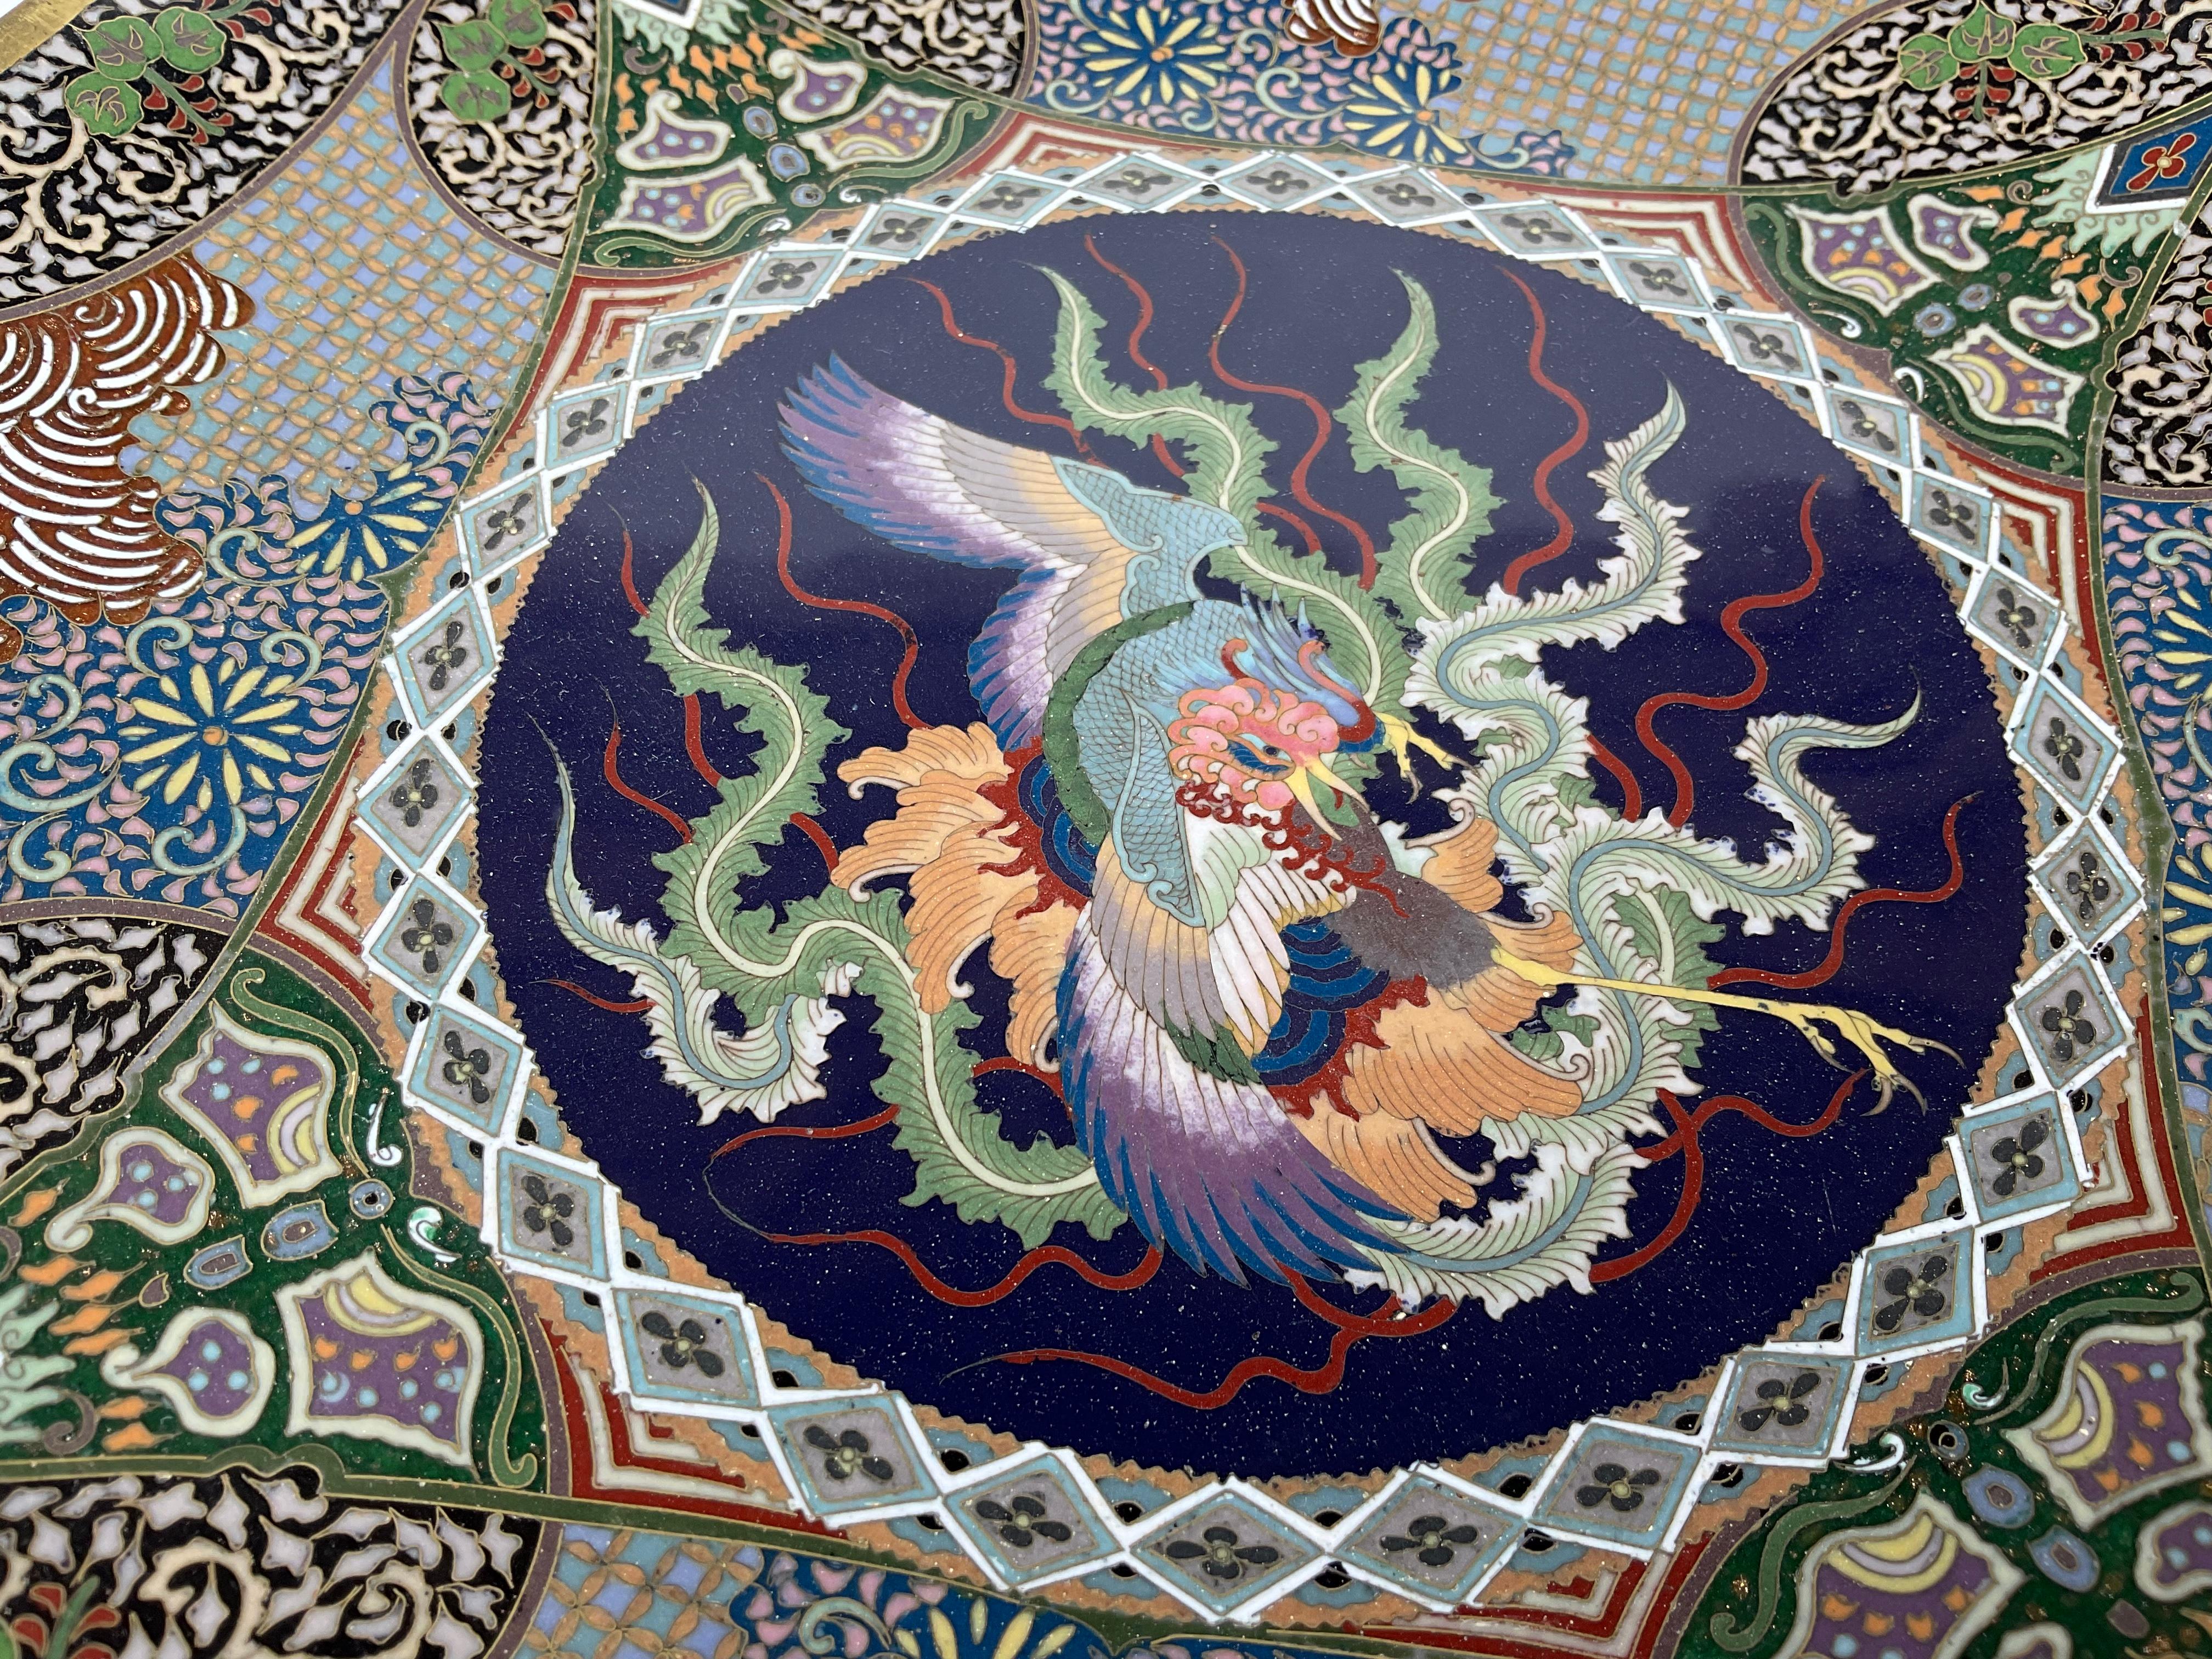 Charger en bronze et cloisonné chinois avec un dragon très détaillé aux couleurs vibrantes. Un travail d'orfèvre.